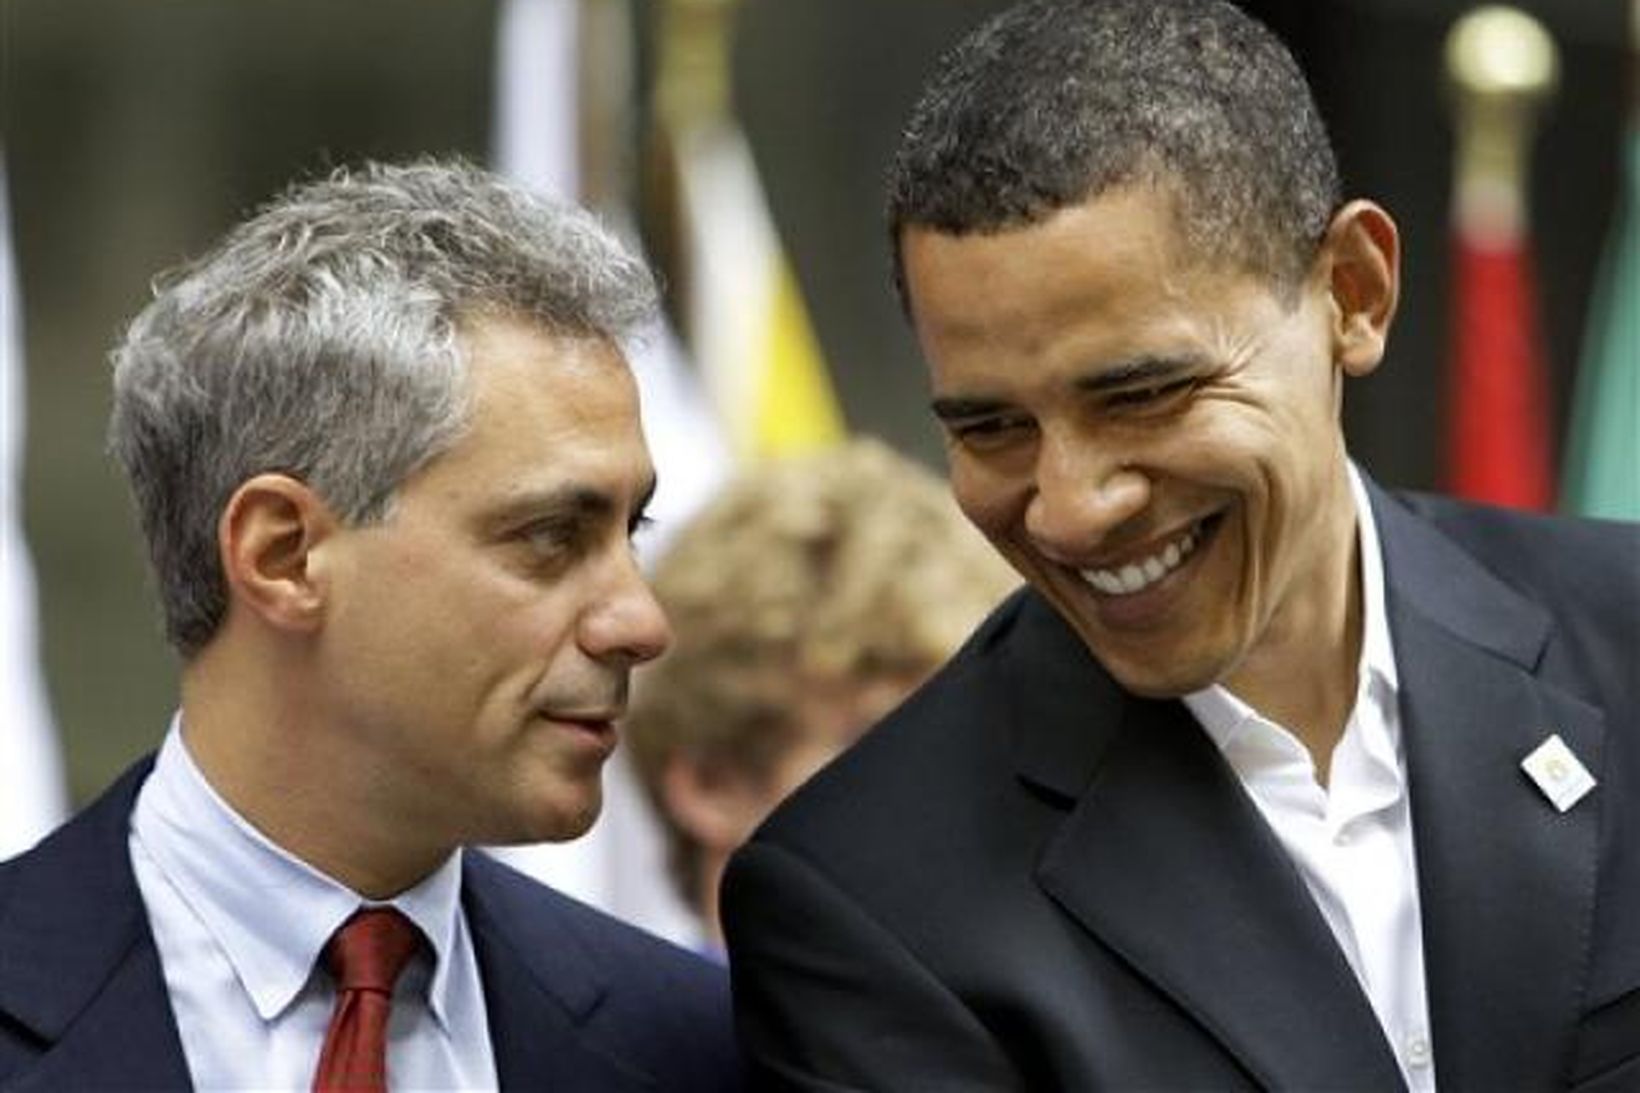 Rahm Emanuel ásamt Barack Obama fyrr á þessu ári.